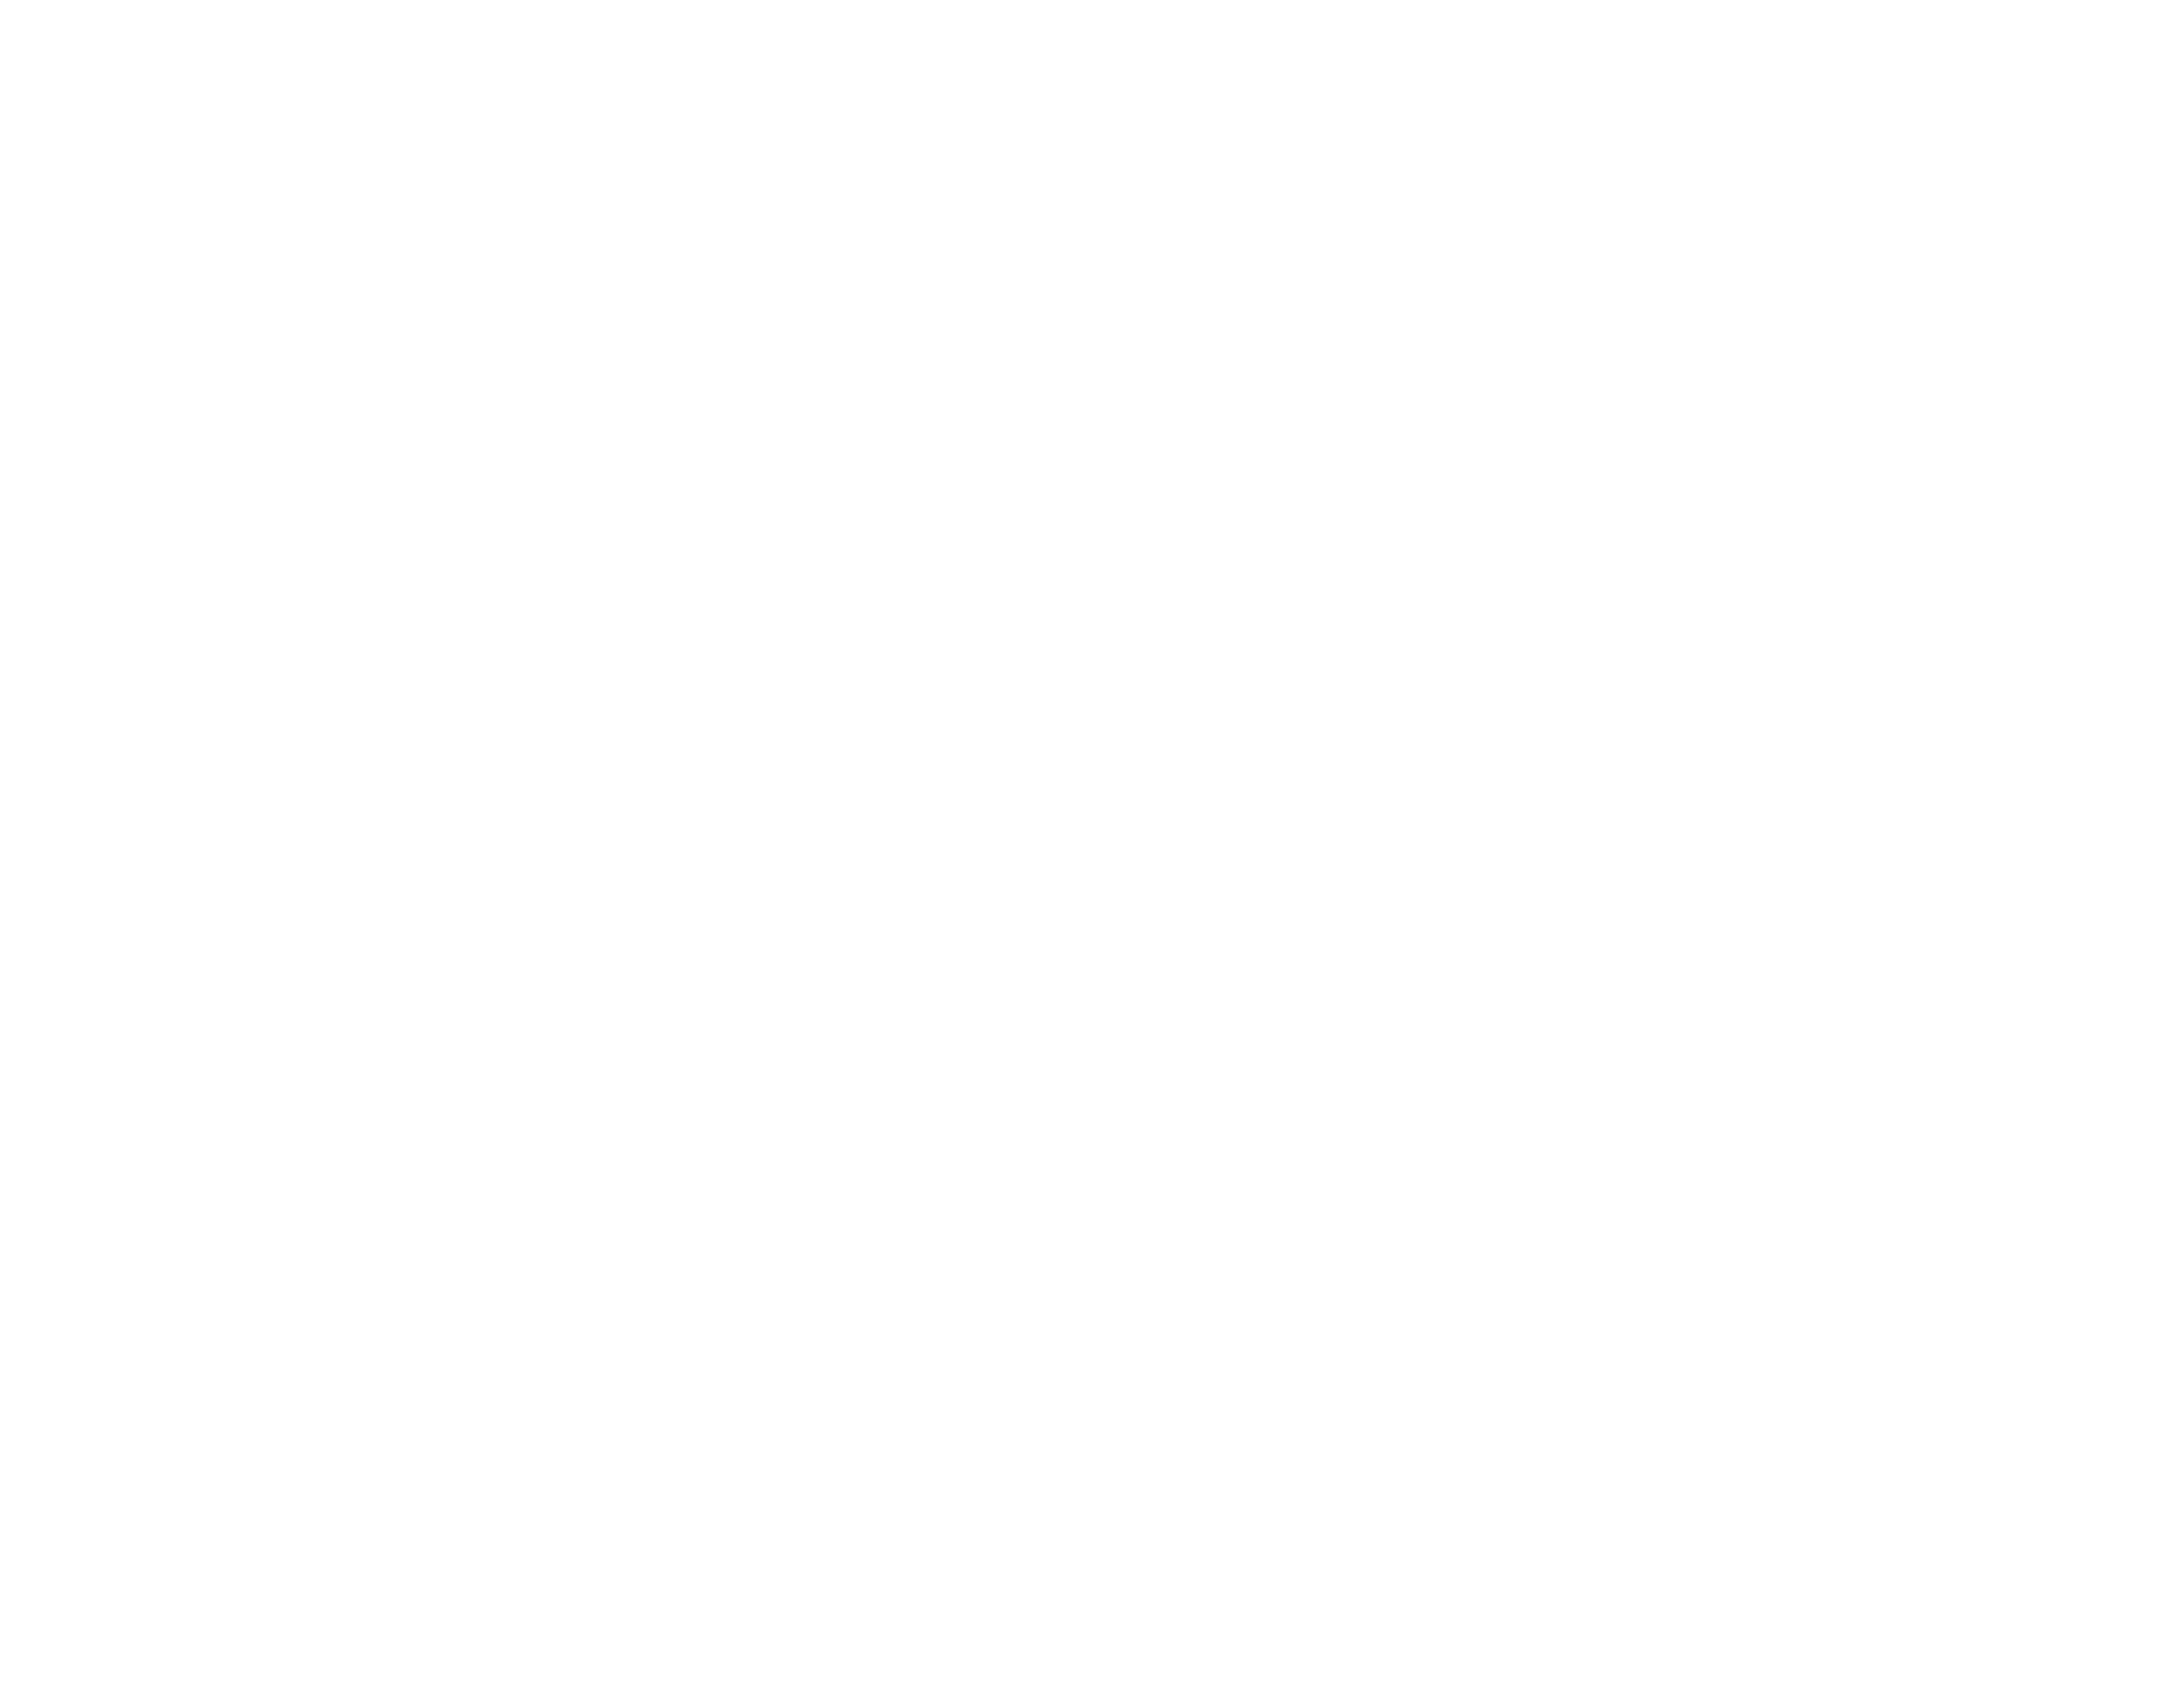 Adams Rivera